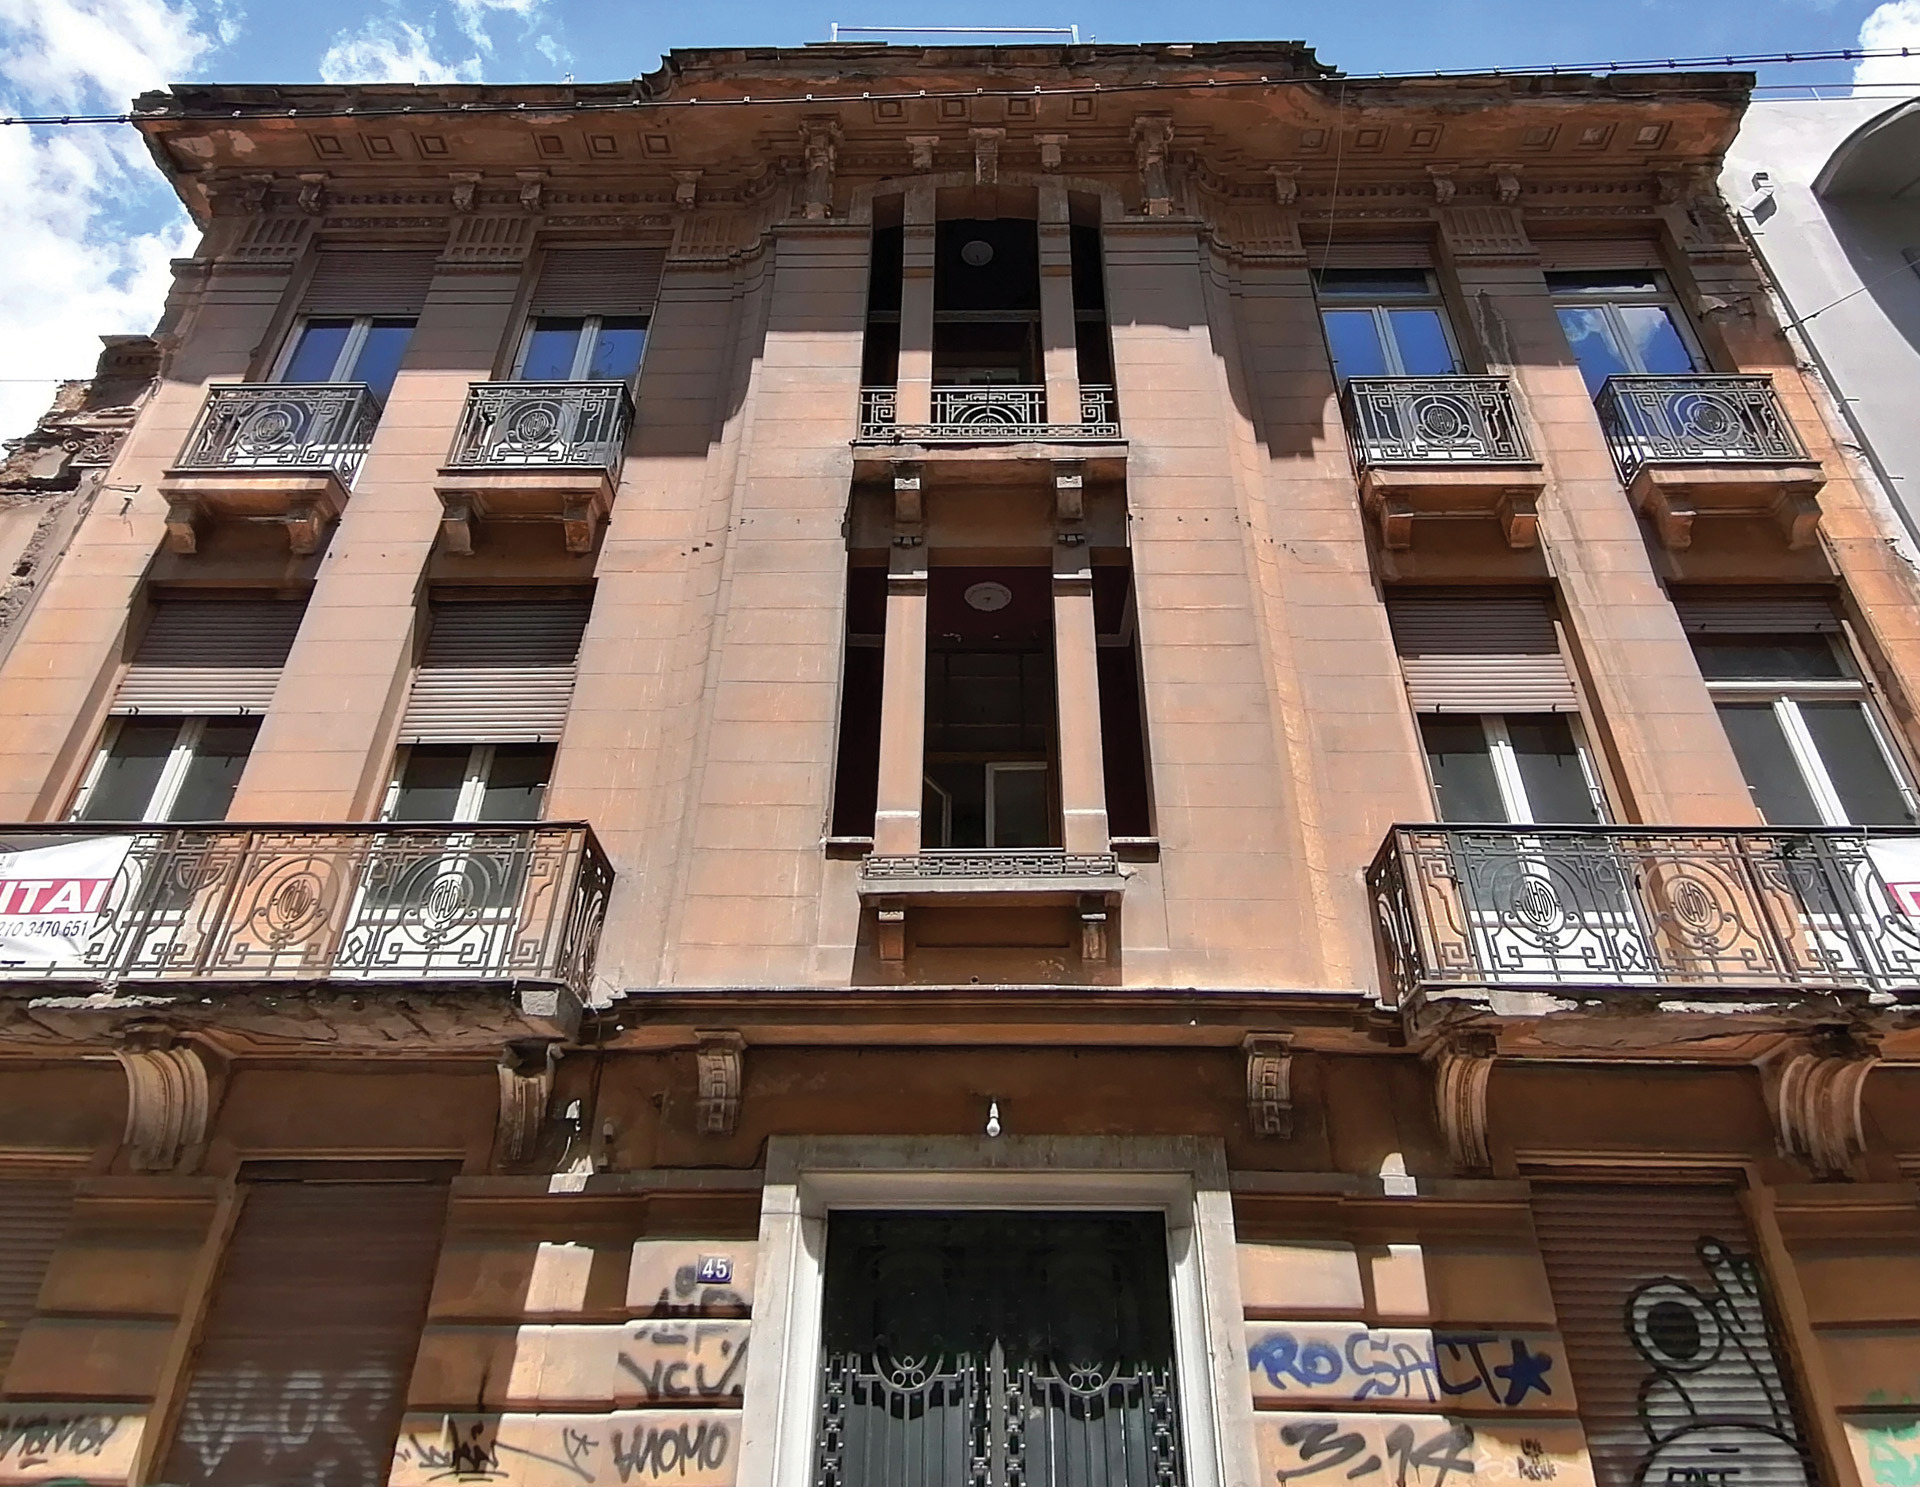 Νεάπολη, Οδός Μαυρομιχάλη 45. Ένα πανέμορφο κτίριο, μικρή πολυκατοικία των πρώτων δεκαετιών του 20ού αιώνα